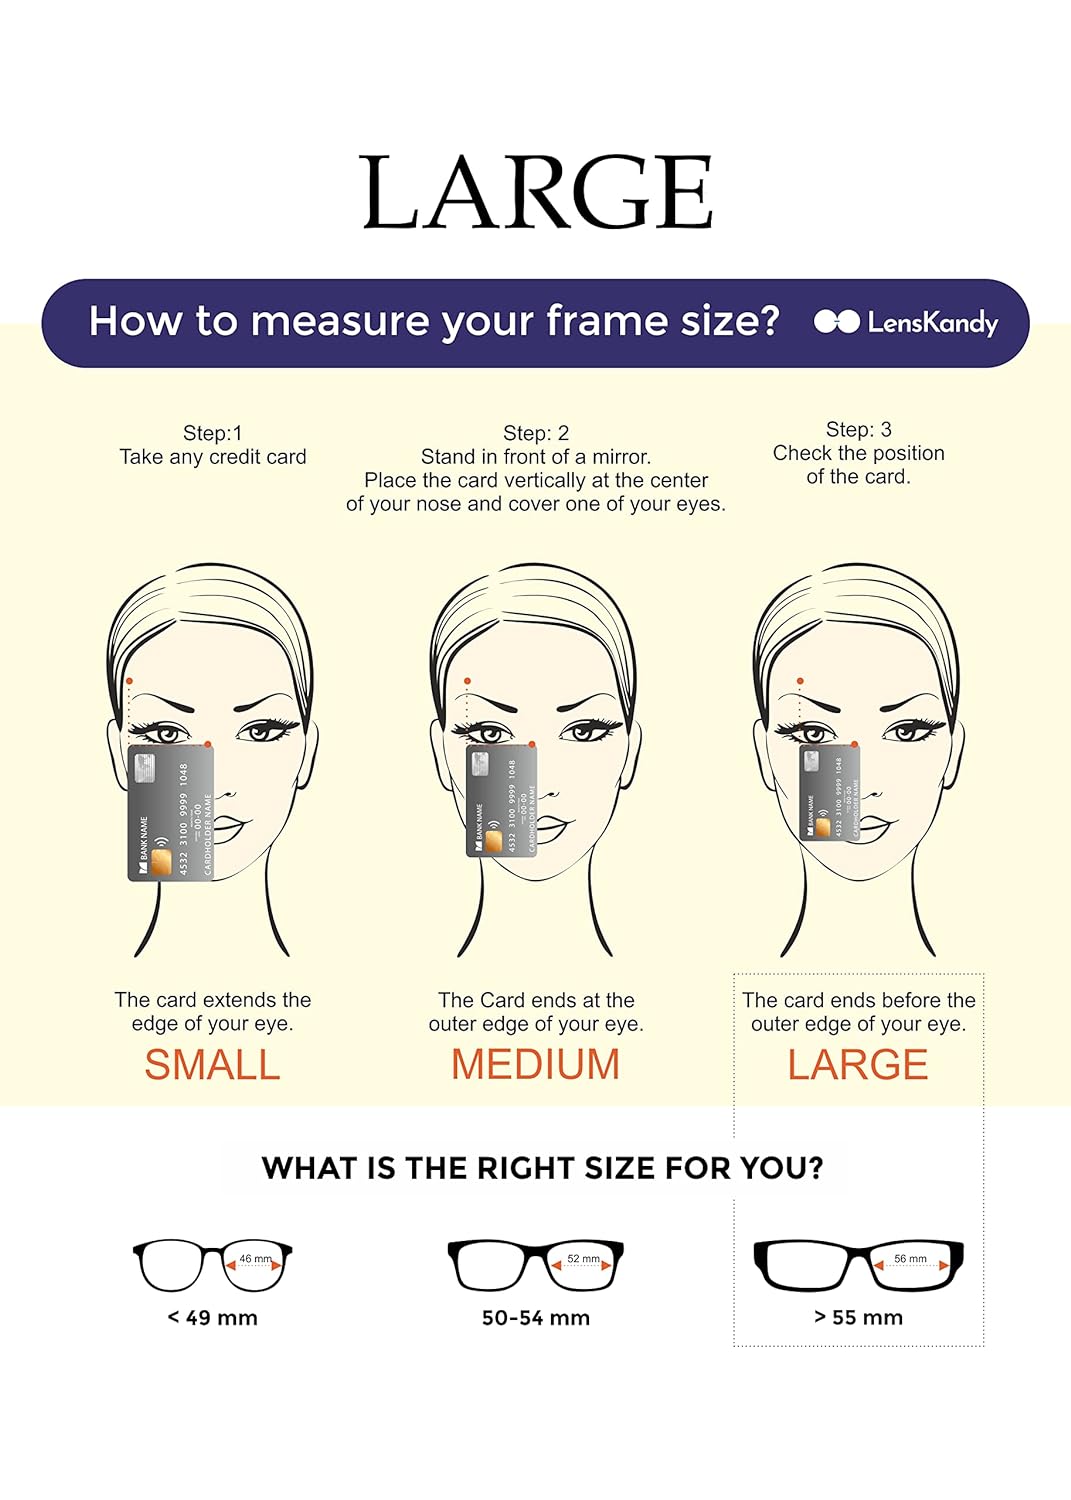 LensKandy | Full Rim Cat Eye Shape | Branded Latest and Trendy Sunglasses for women | 100% UVA & UVB Protected | Large | Brown Designer